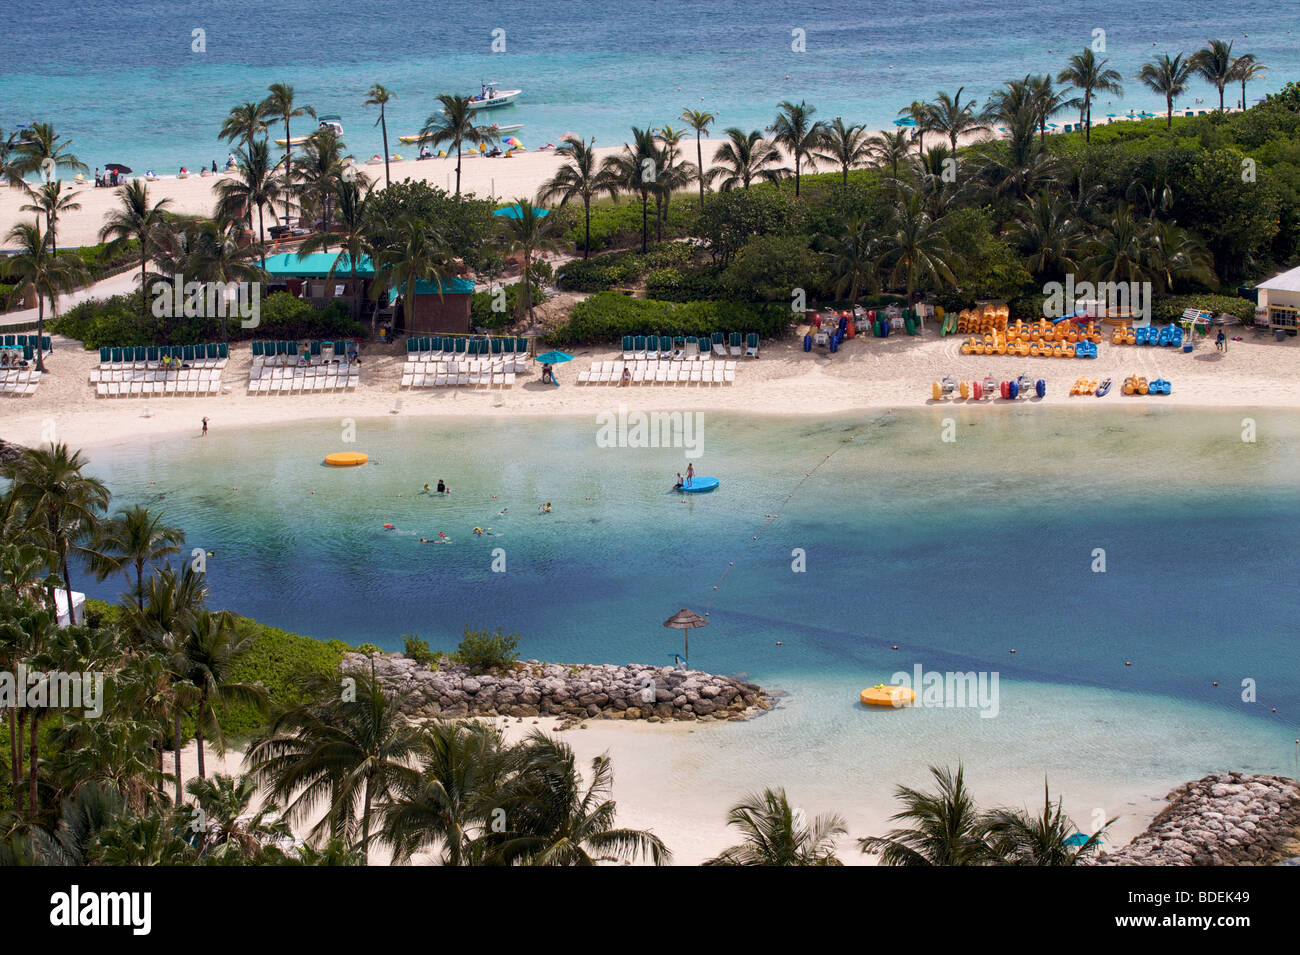 Visite turistiche sulla spiaggia principale del complesso Atlantis Paradise Island Bahamas Foto Stock